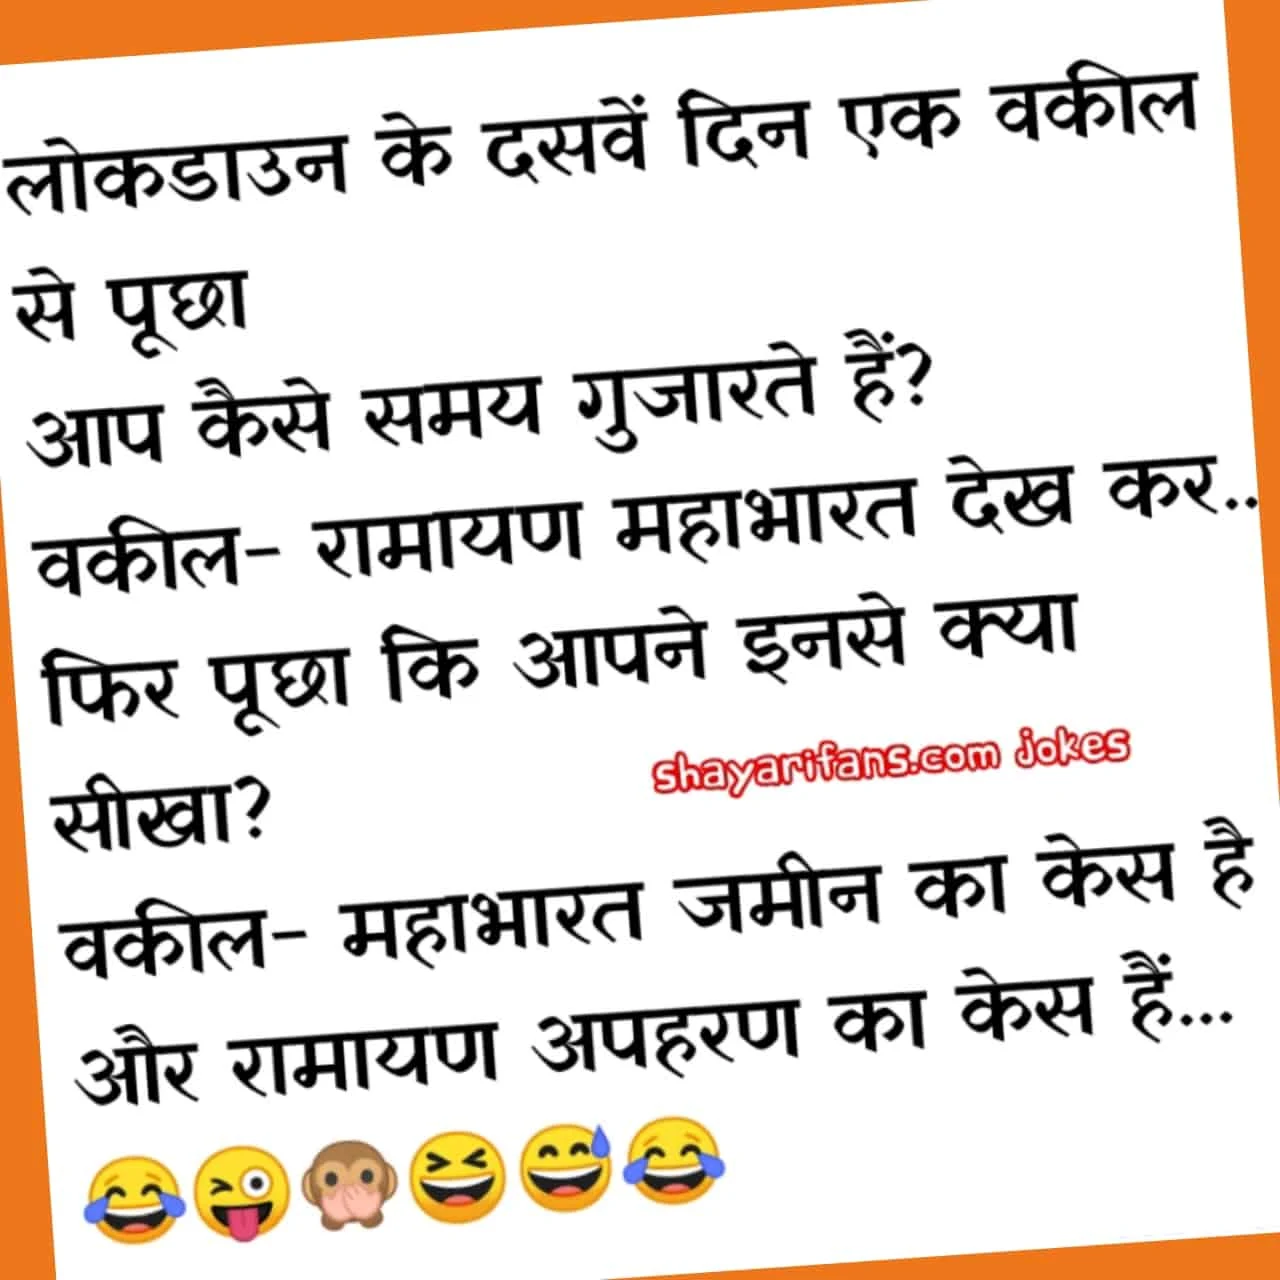 Jokes in hindi for whatsapp Part 5  |  लडकिया एक साथ बेठकर बोल सकती हे.... Shayarifans